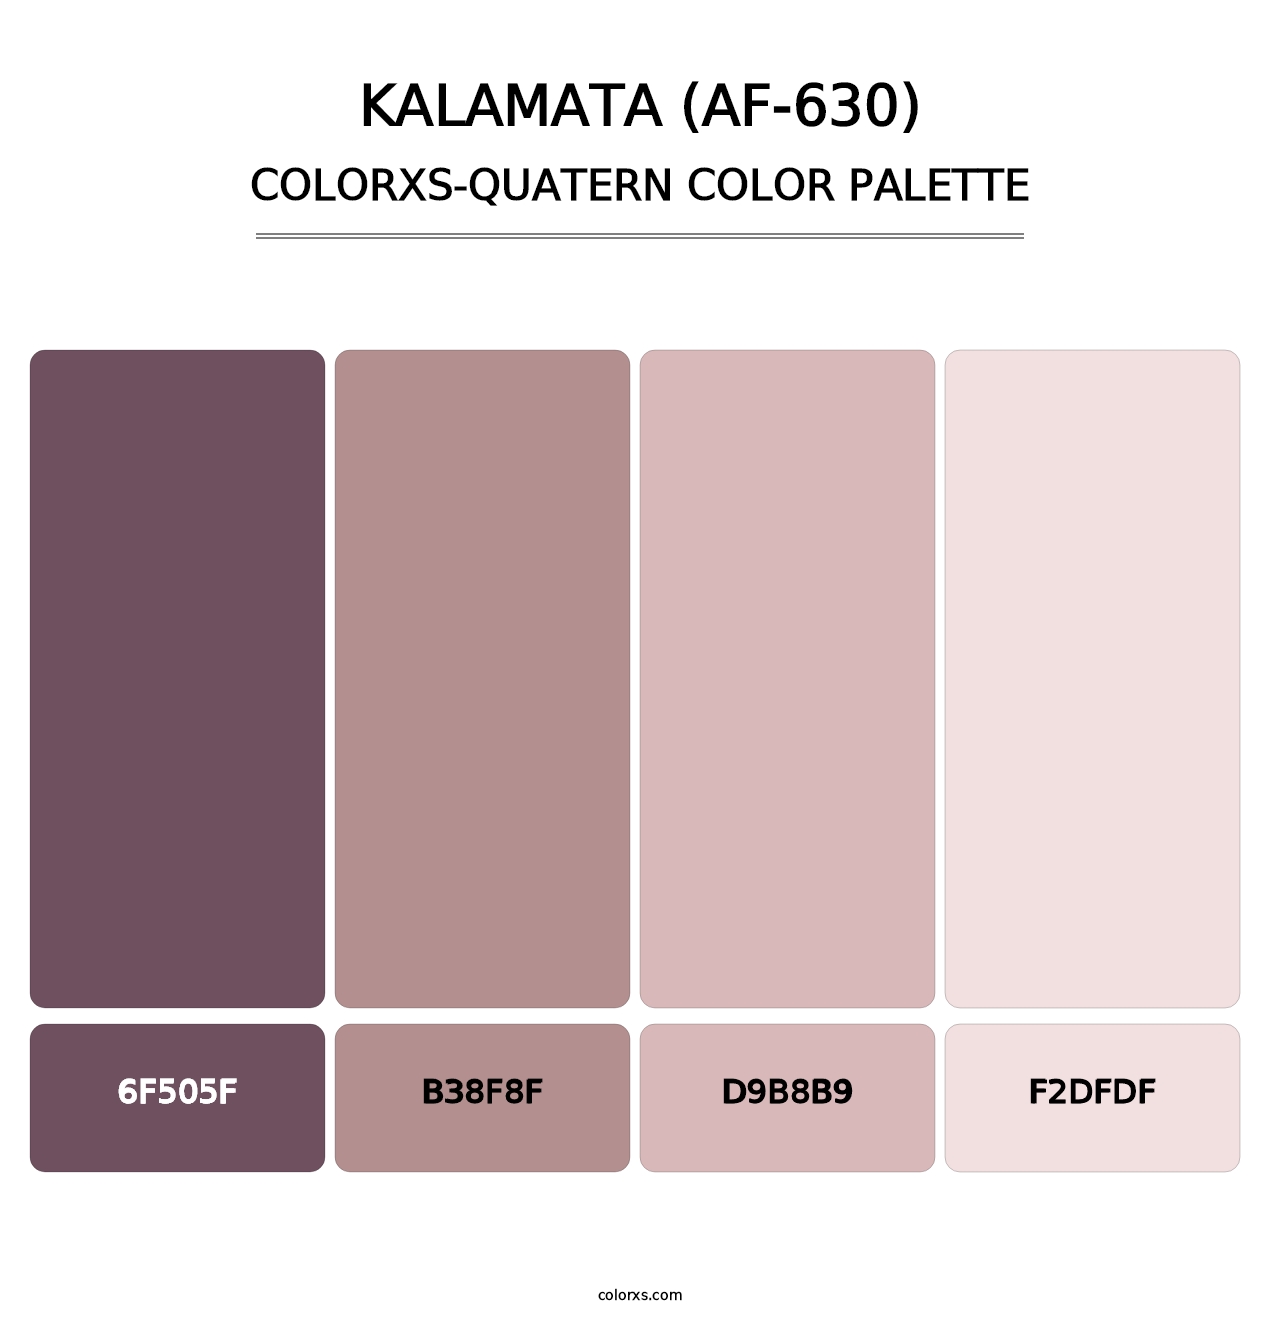 Kalamata (AF-630) - Colorxs Quatern Palette